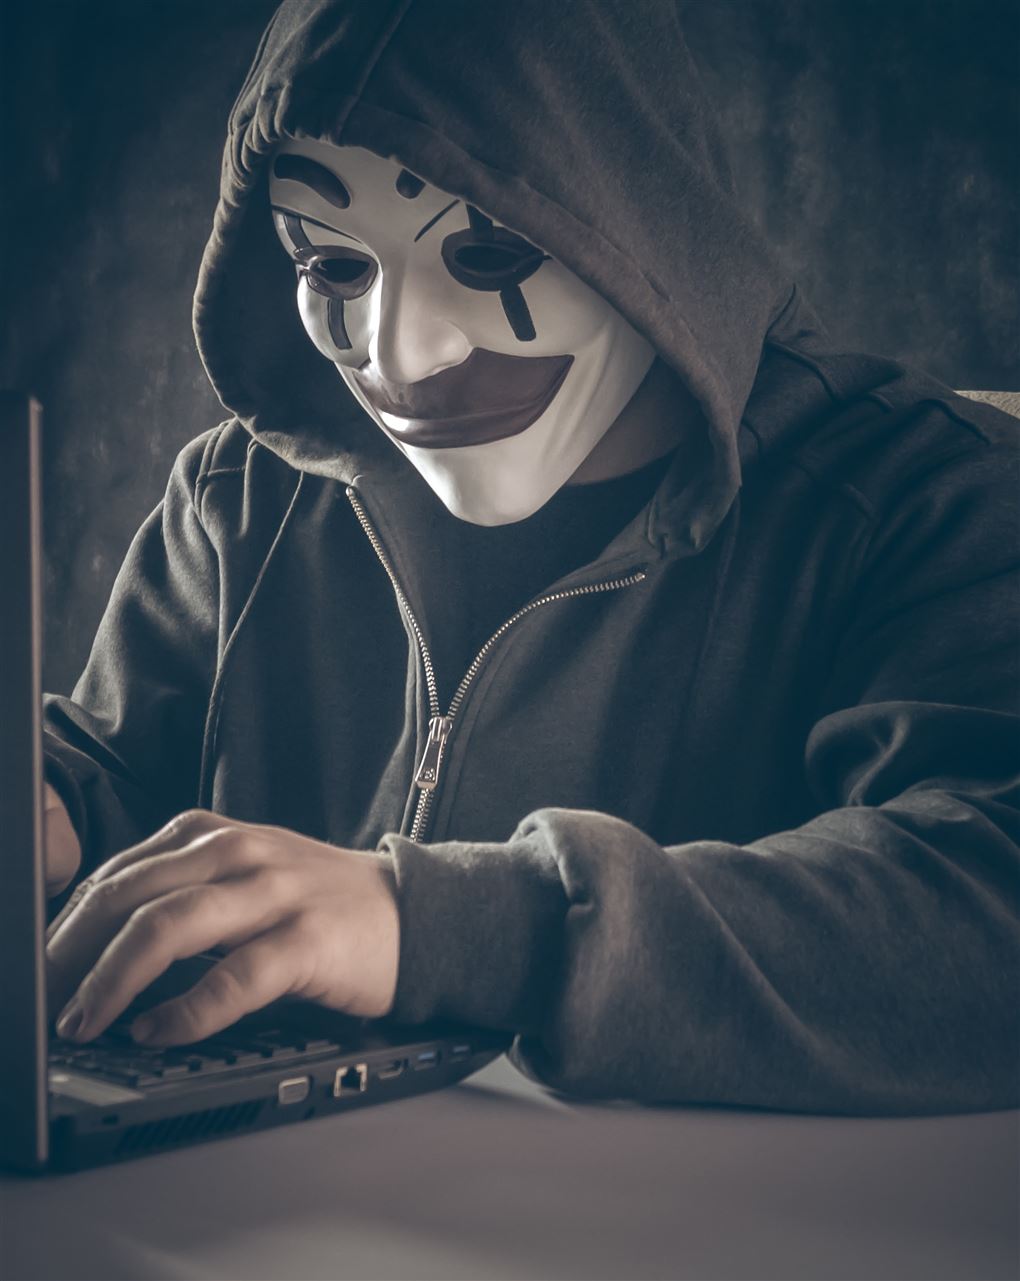 En maskeret person ved en computer